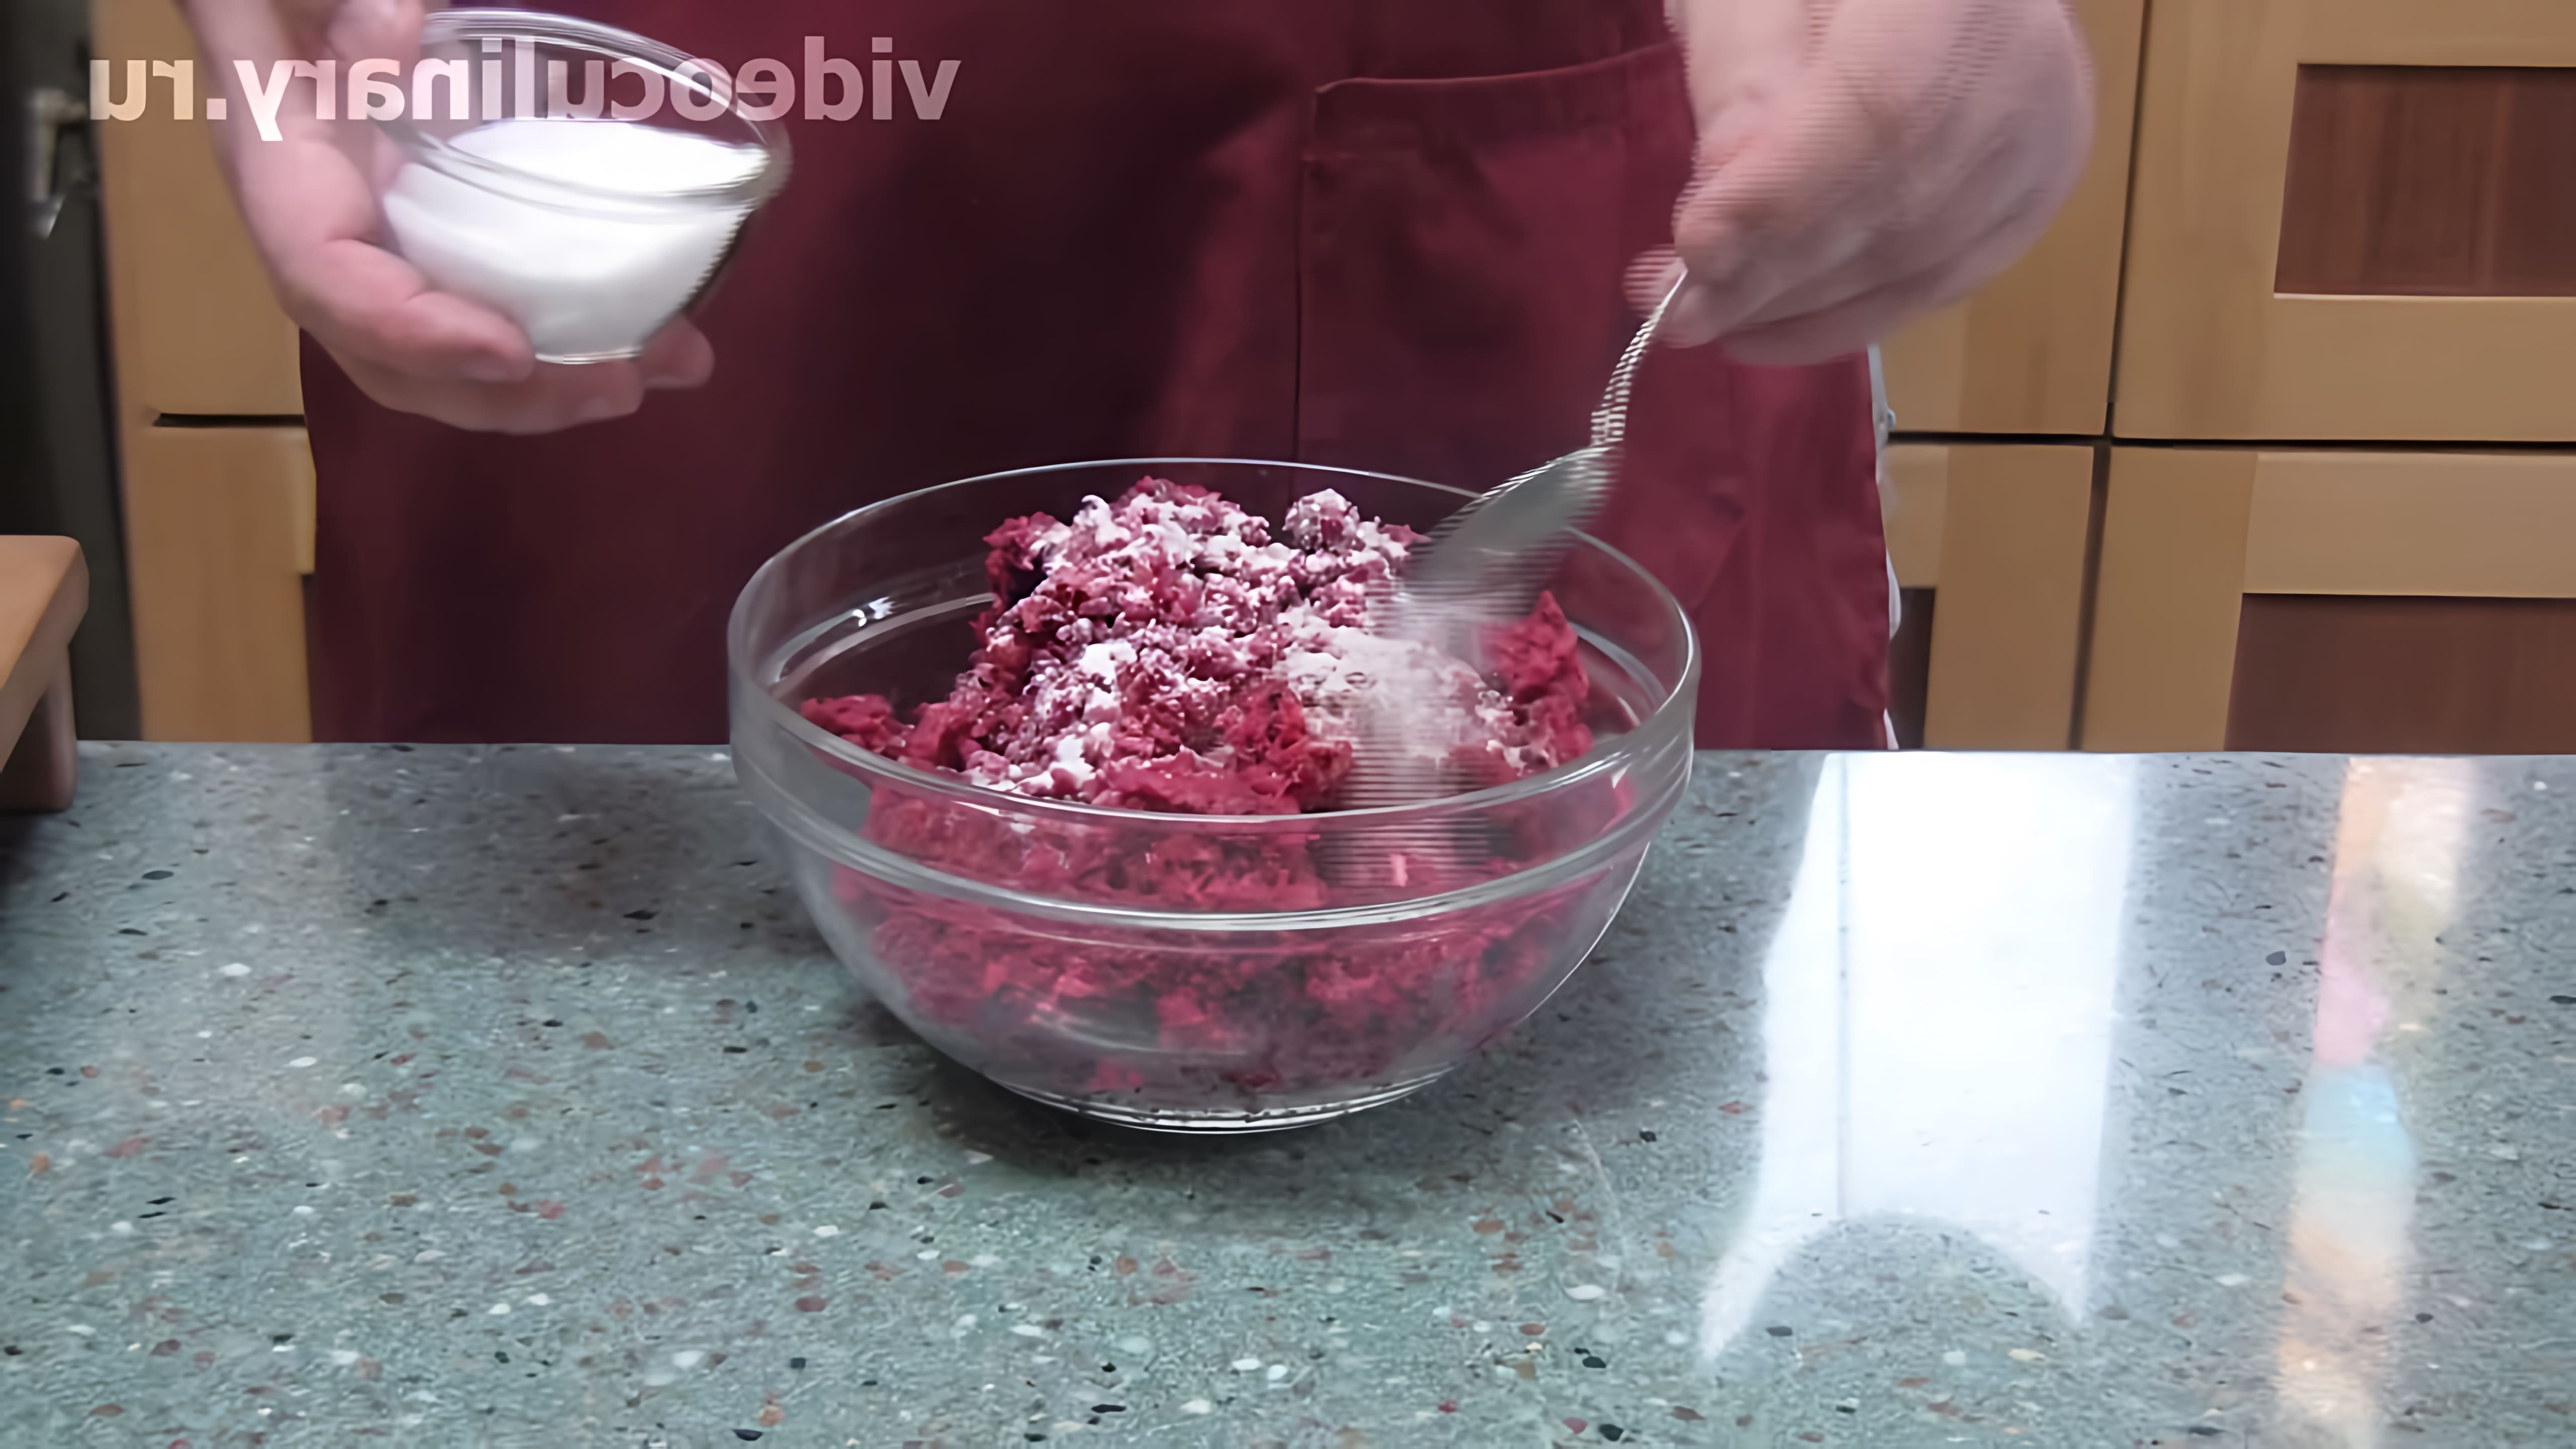 В этом видео демонстрируется рецепт острого соуса из хрена, который называется "Рецепт Бабушки Эммы"